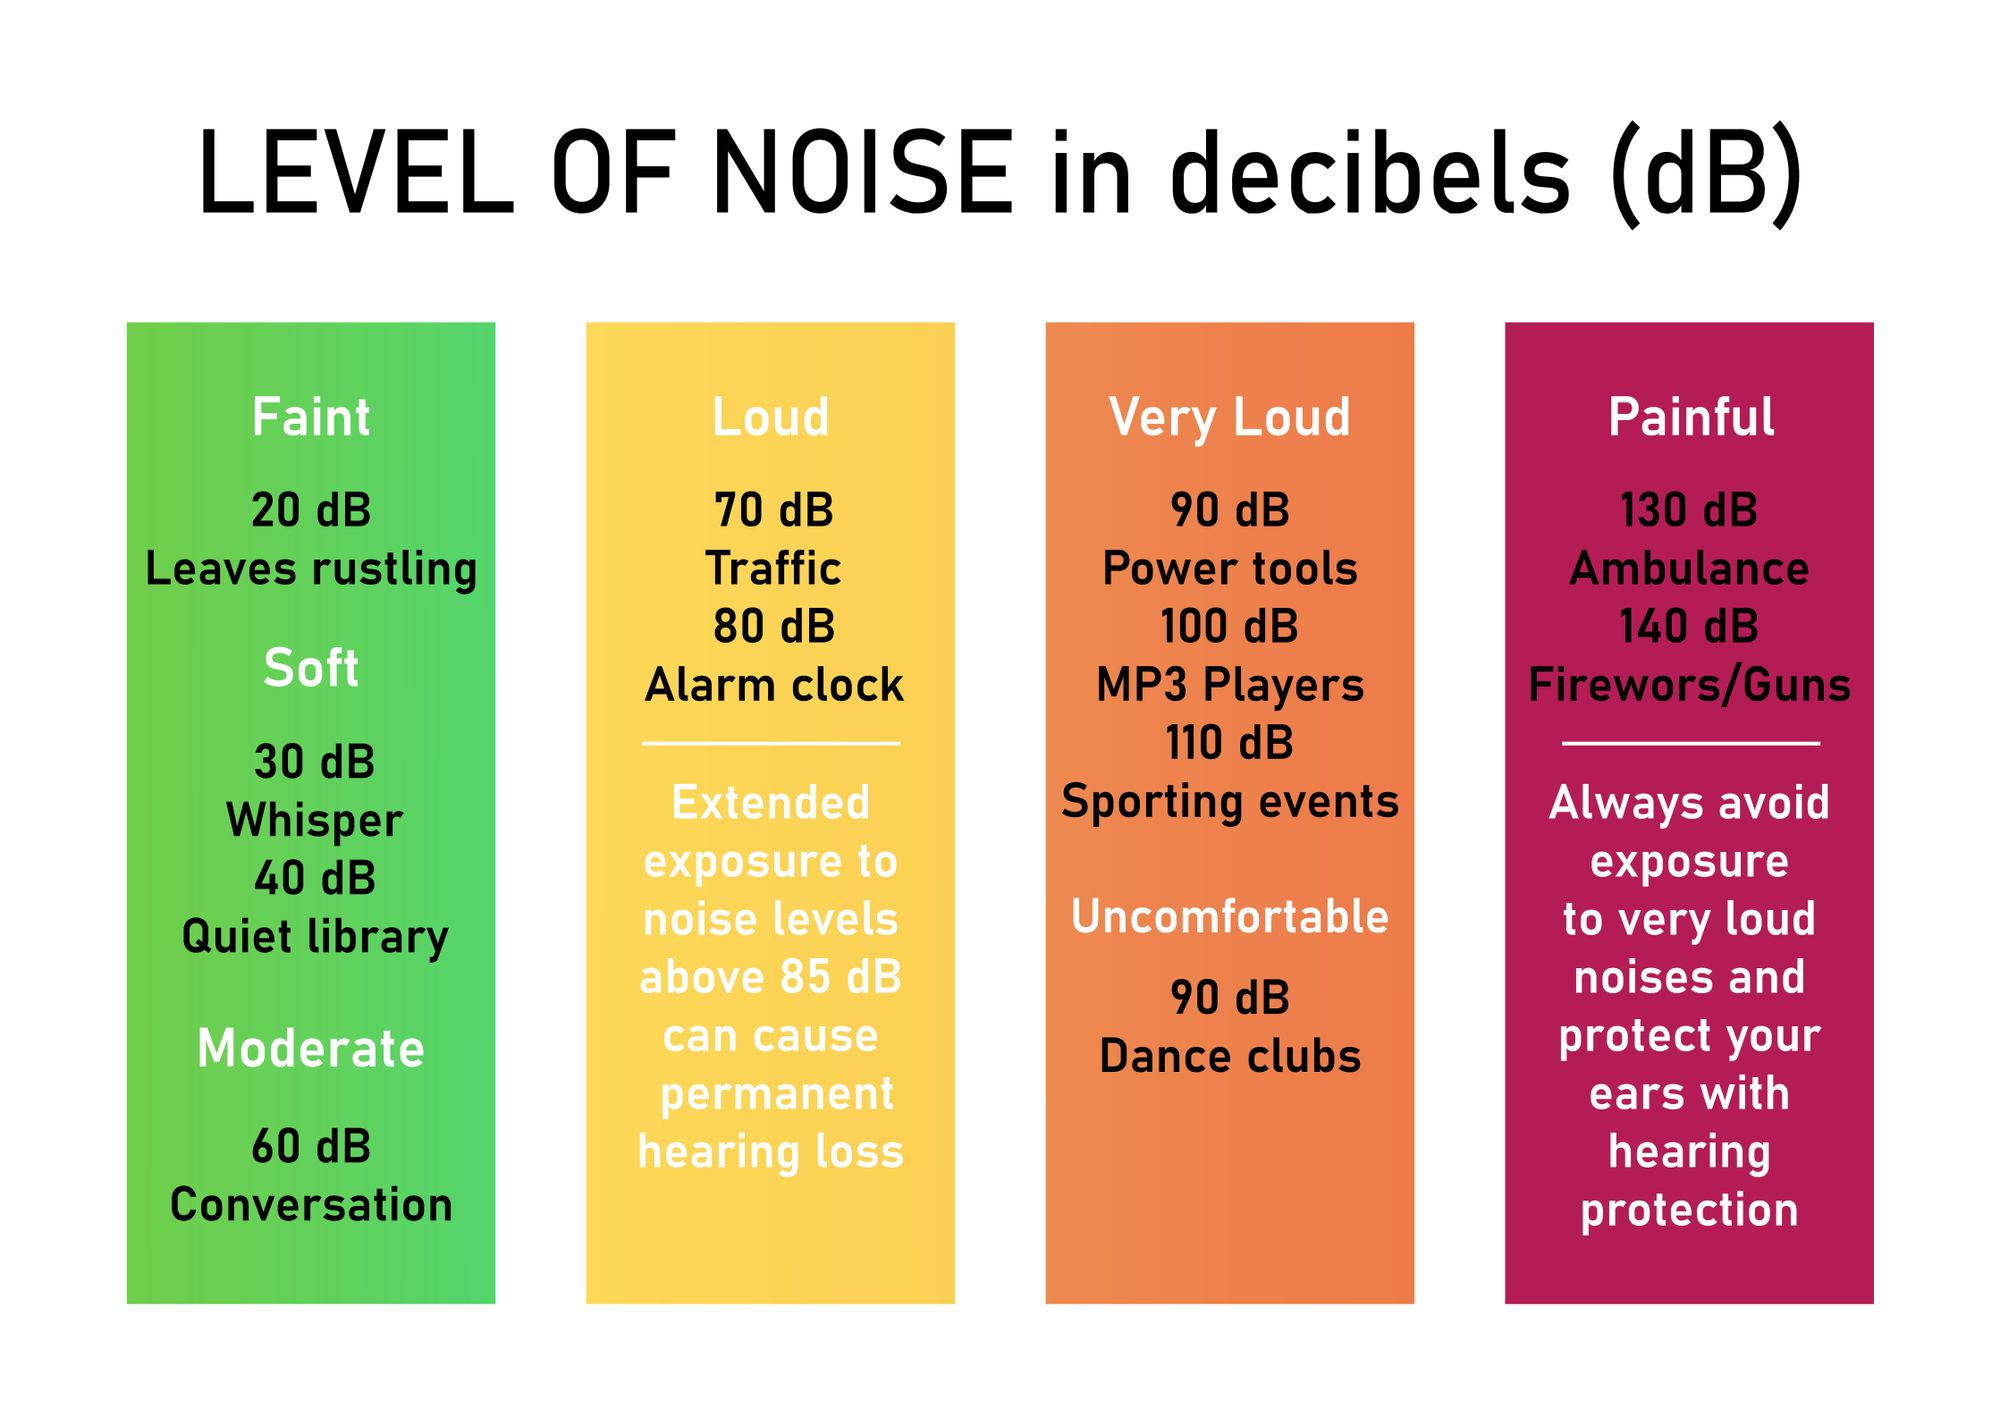 Quanti decibel sono buoni per un sistema di allarme?